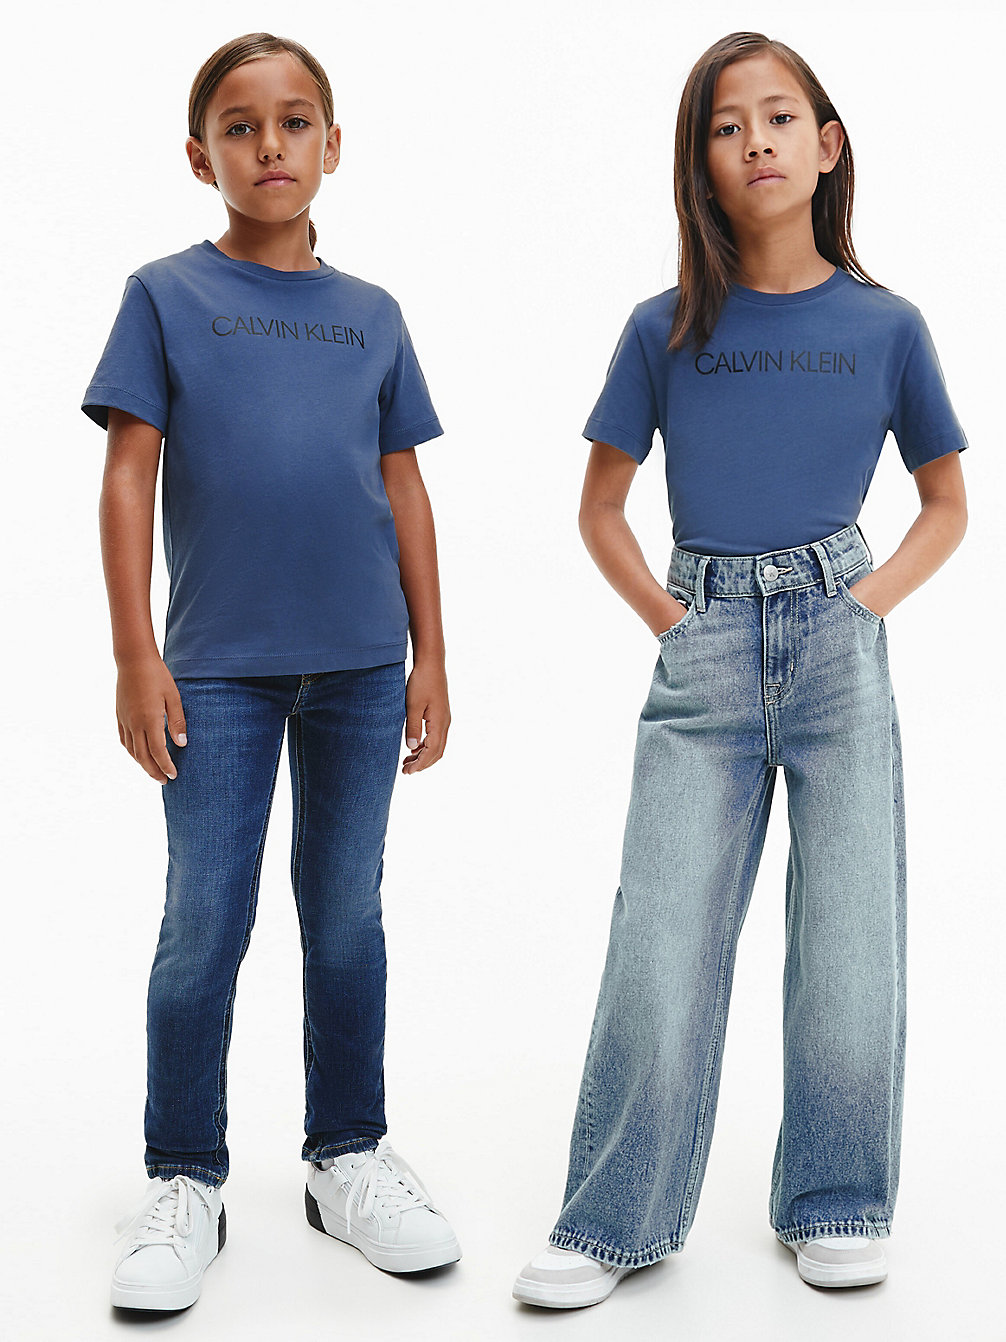 AEGEAN SEA > Logo-T-Shirt Aus Bio-Baumwolle Für Kinder > undefined kids unisex - Calvin Klein